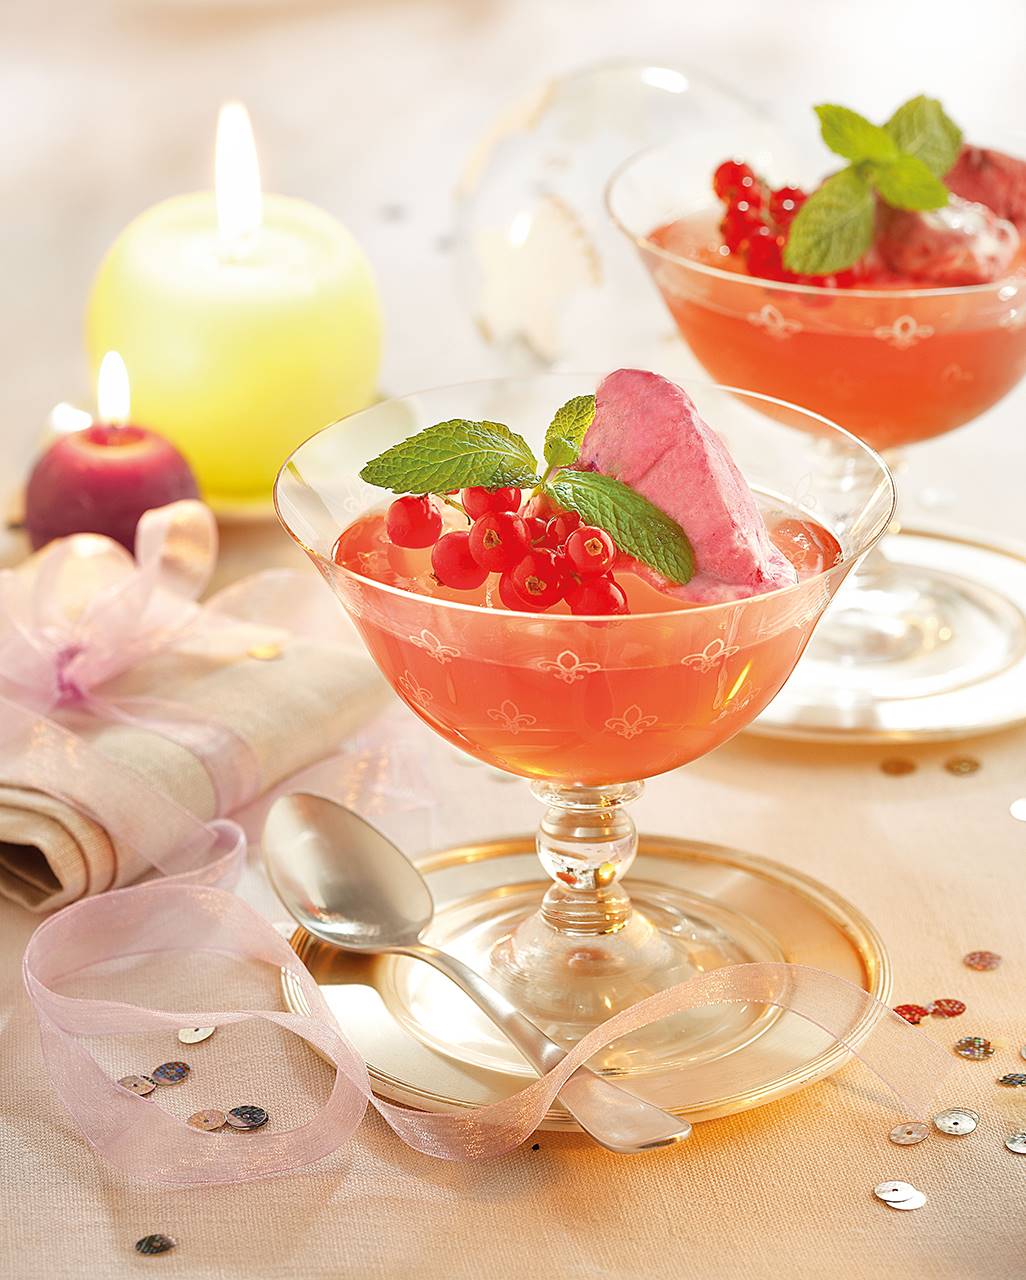 Cava rosado con helado de frutos rojos